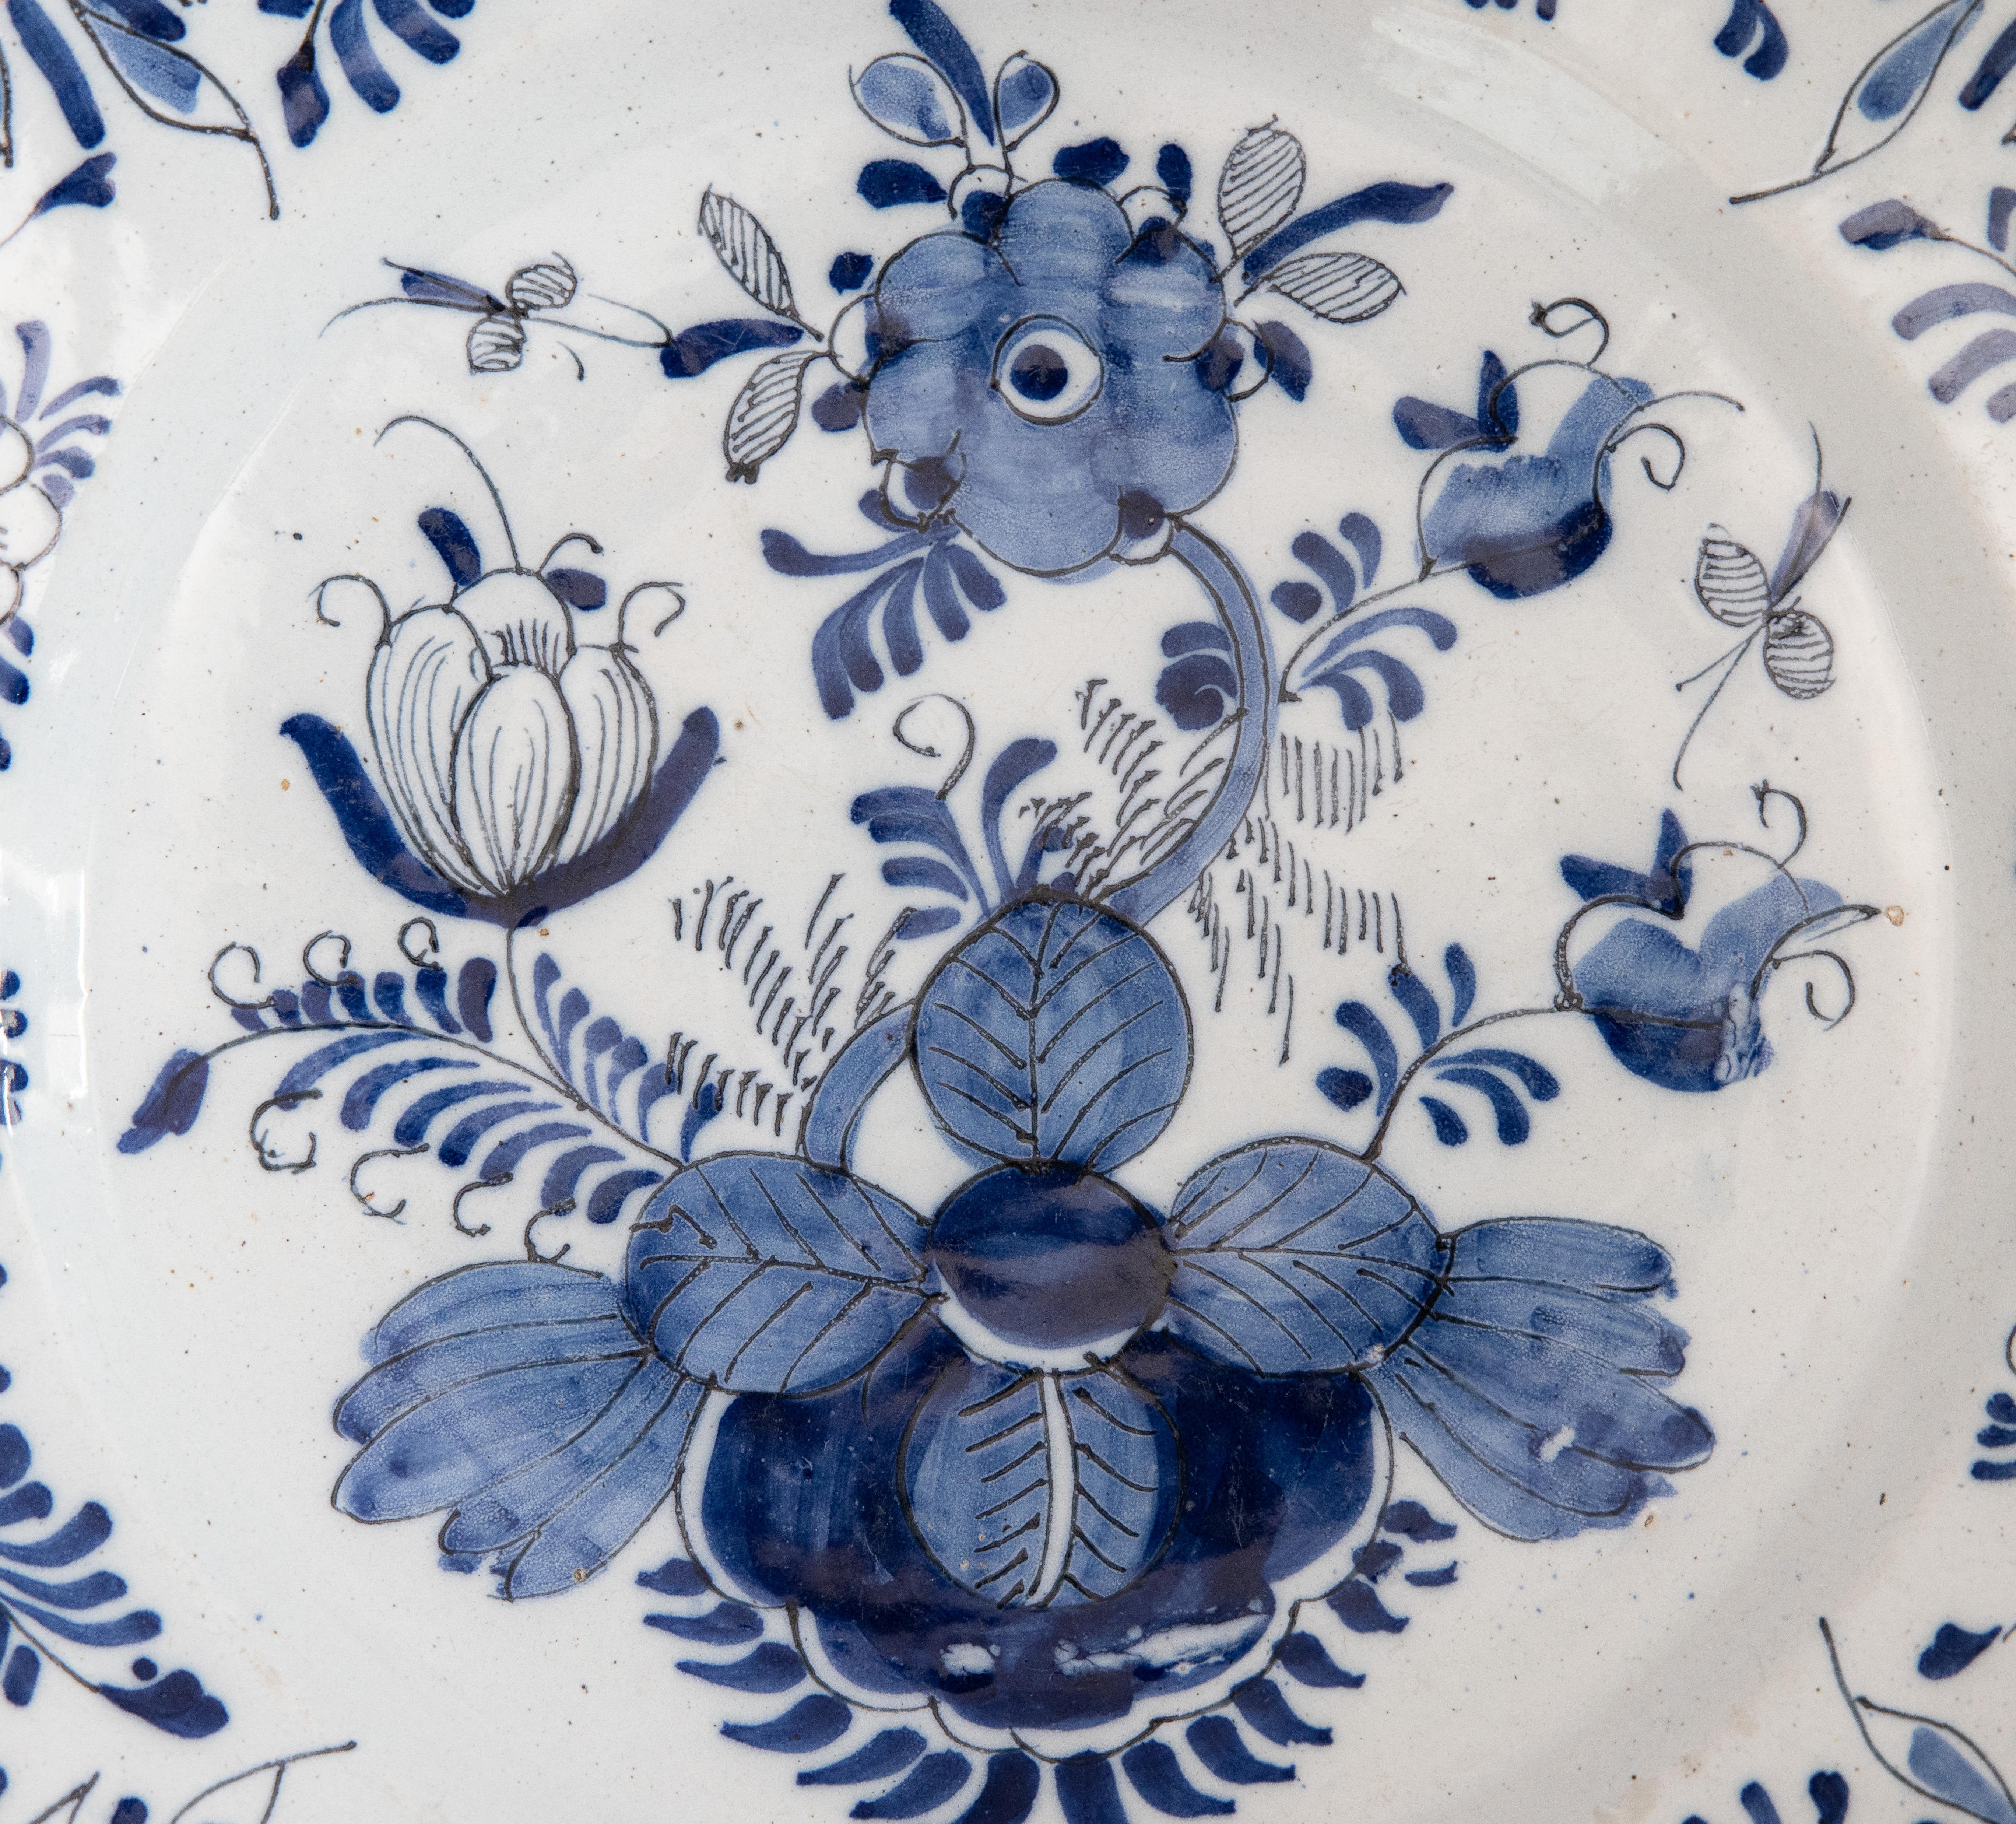 Grand chargeur Delft hollandais du XVIIIe siècle, peint à la main d'un motif floral et feuillu avec des insectes en bleu de cobalt et blanc, vers 1750. Cette belle grande assiette serait merveilleusement ajoutée à une collection, exposée au mur, sur